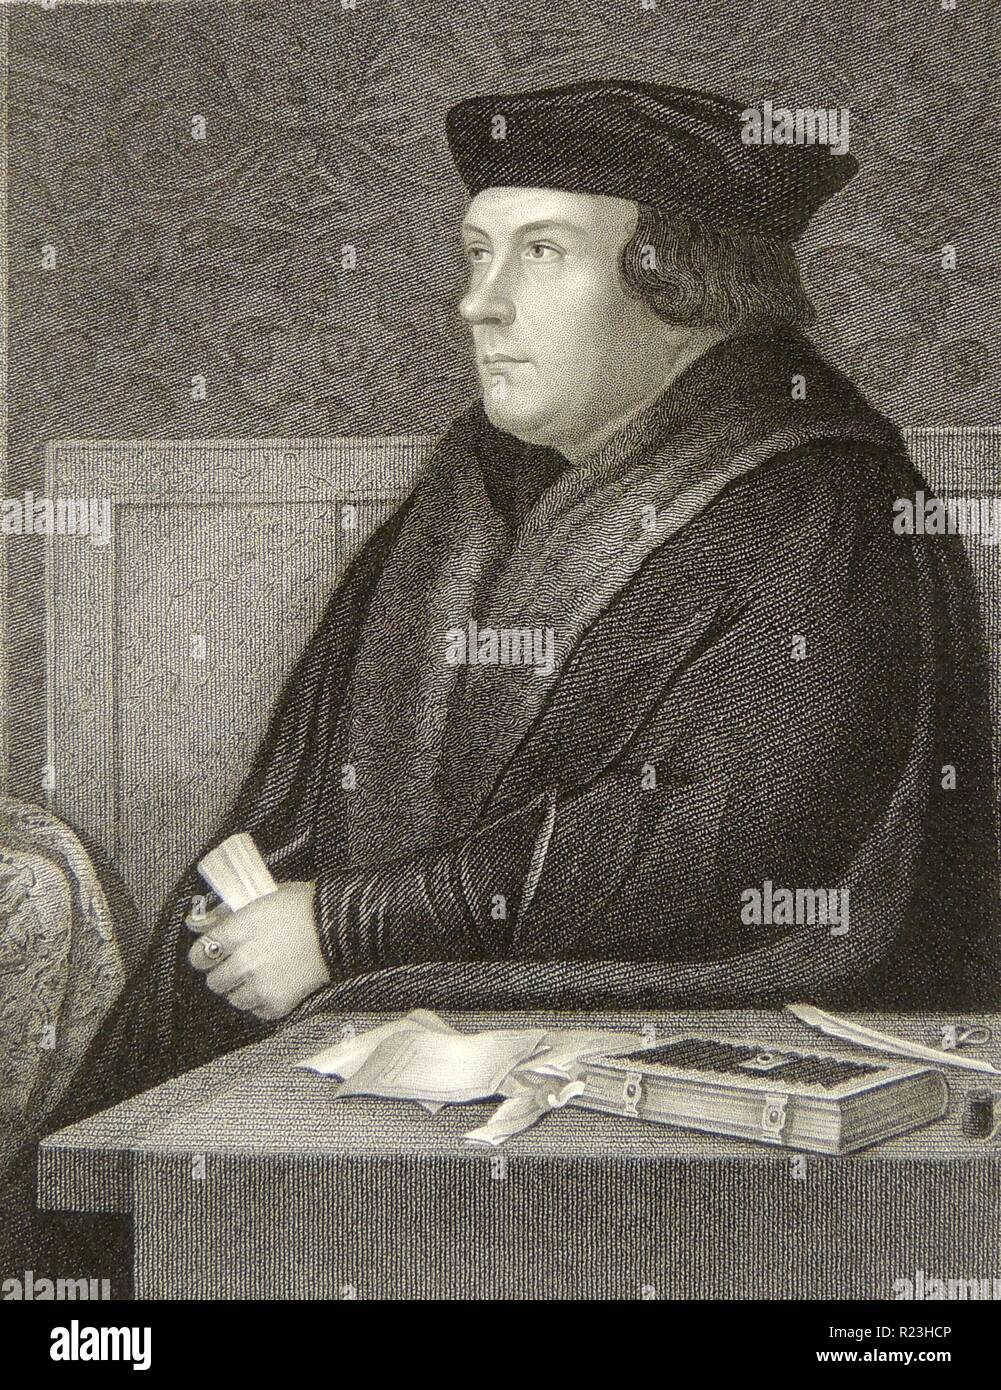 Thomas Cromwell (c) 1485-1540. Leitender Berater Heinrich VIII. Der Finanzminister von 1533. Verlorene Gnade über die Ehe des Königs Anna von Kleve, auf den Turm gesendet und ausgeführt. Stockfoto